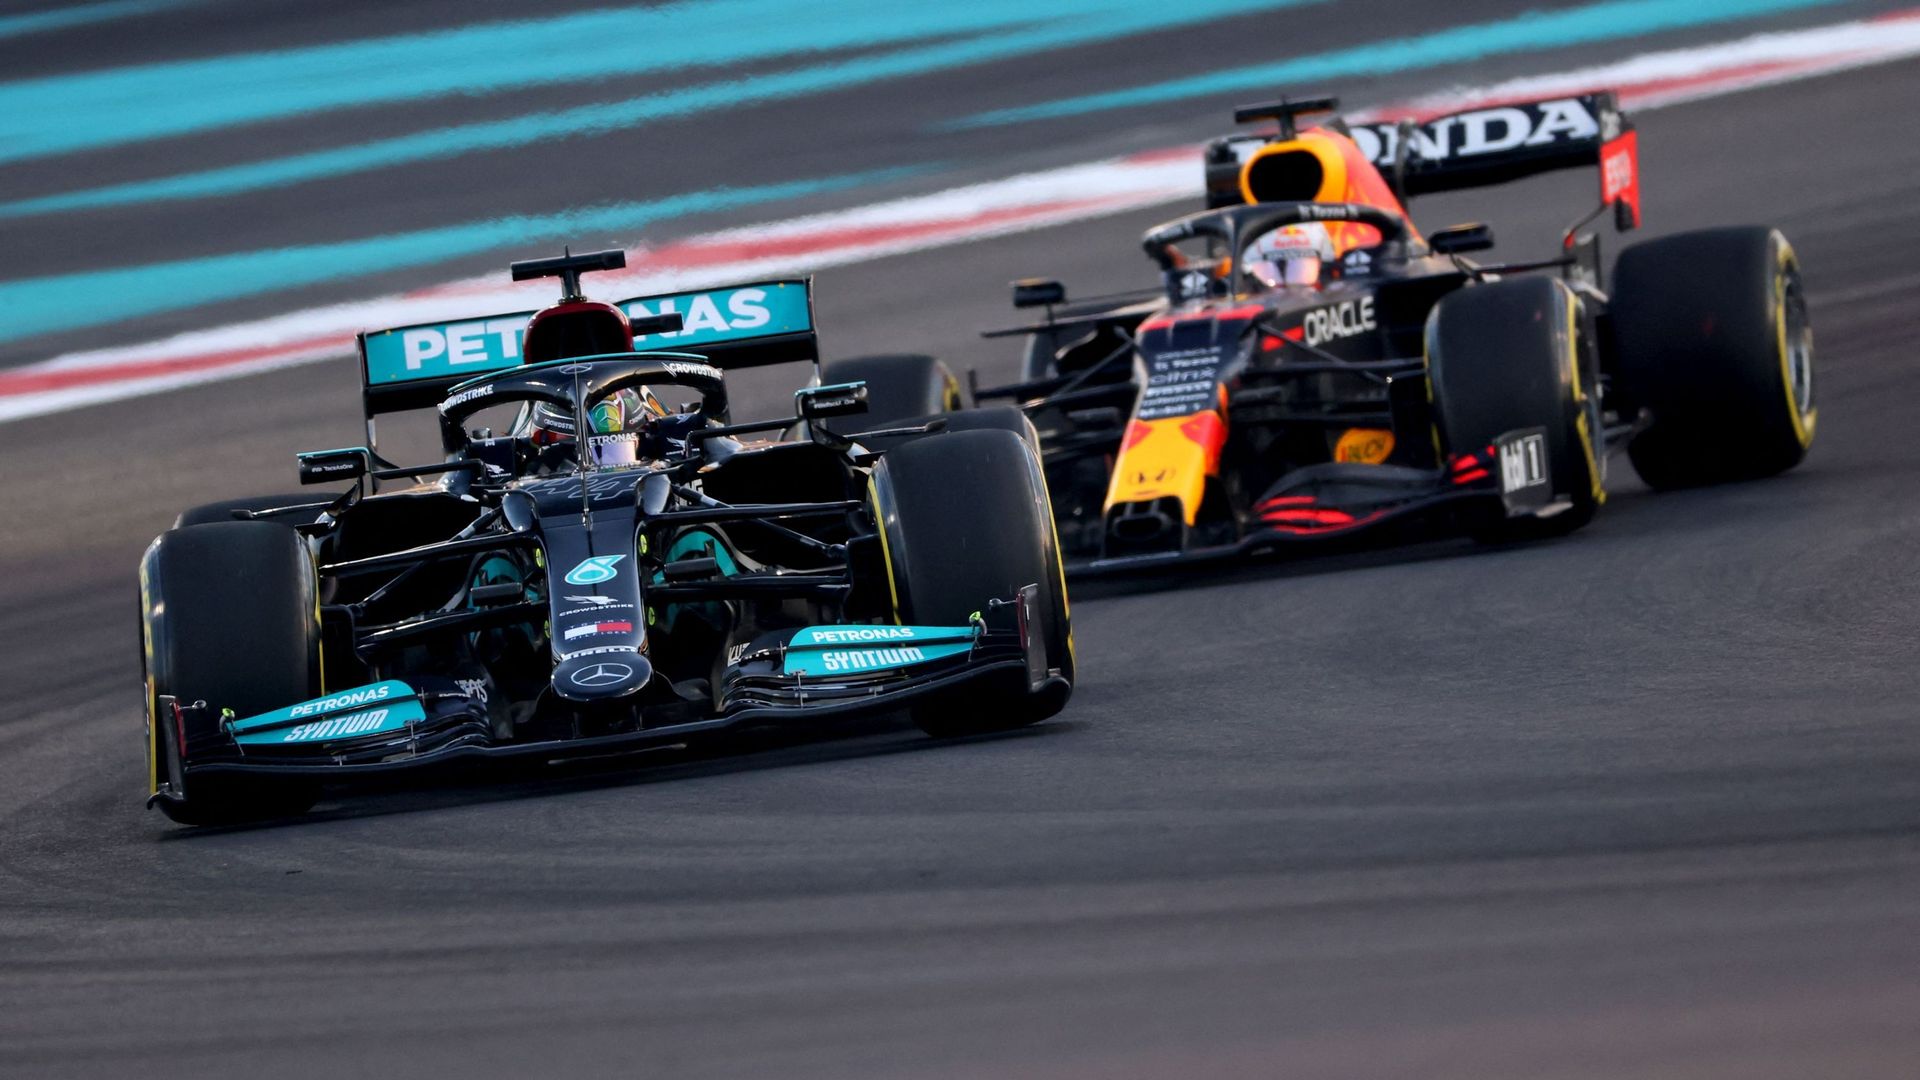 Vivez le tour du circuit d’Abu Dhabi avec Lewis Hamilton et Max Verstappen qui se disputeront la couronne mondiale ce dimanche.